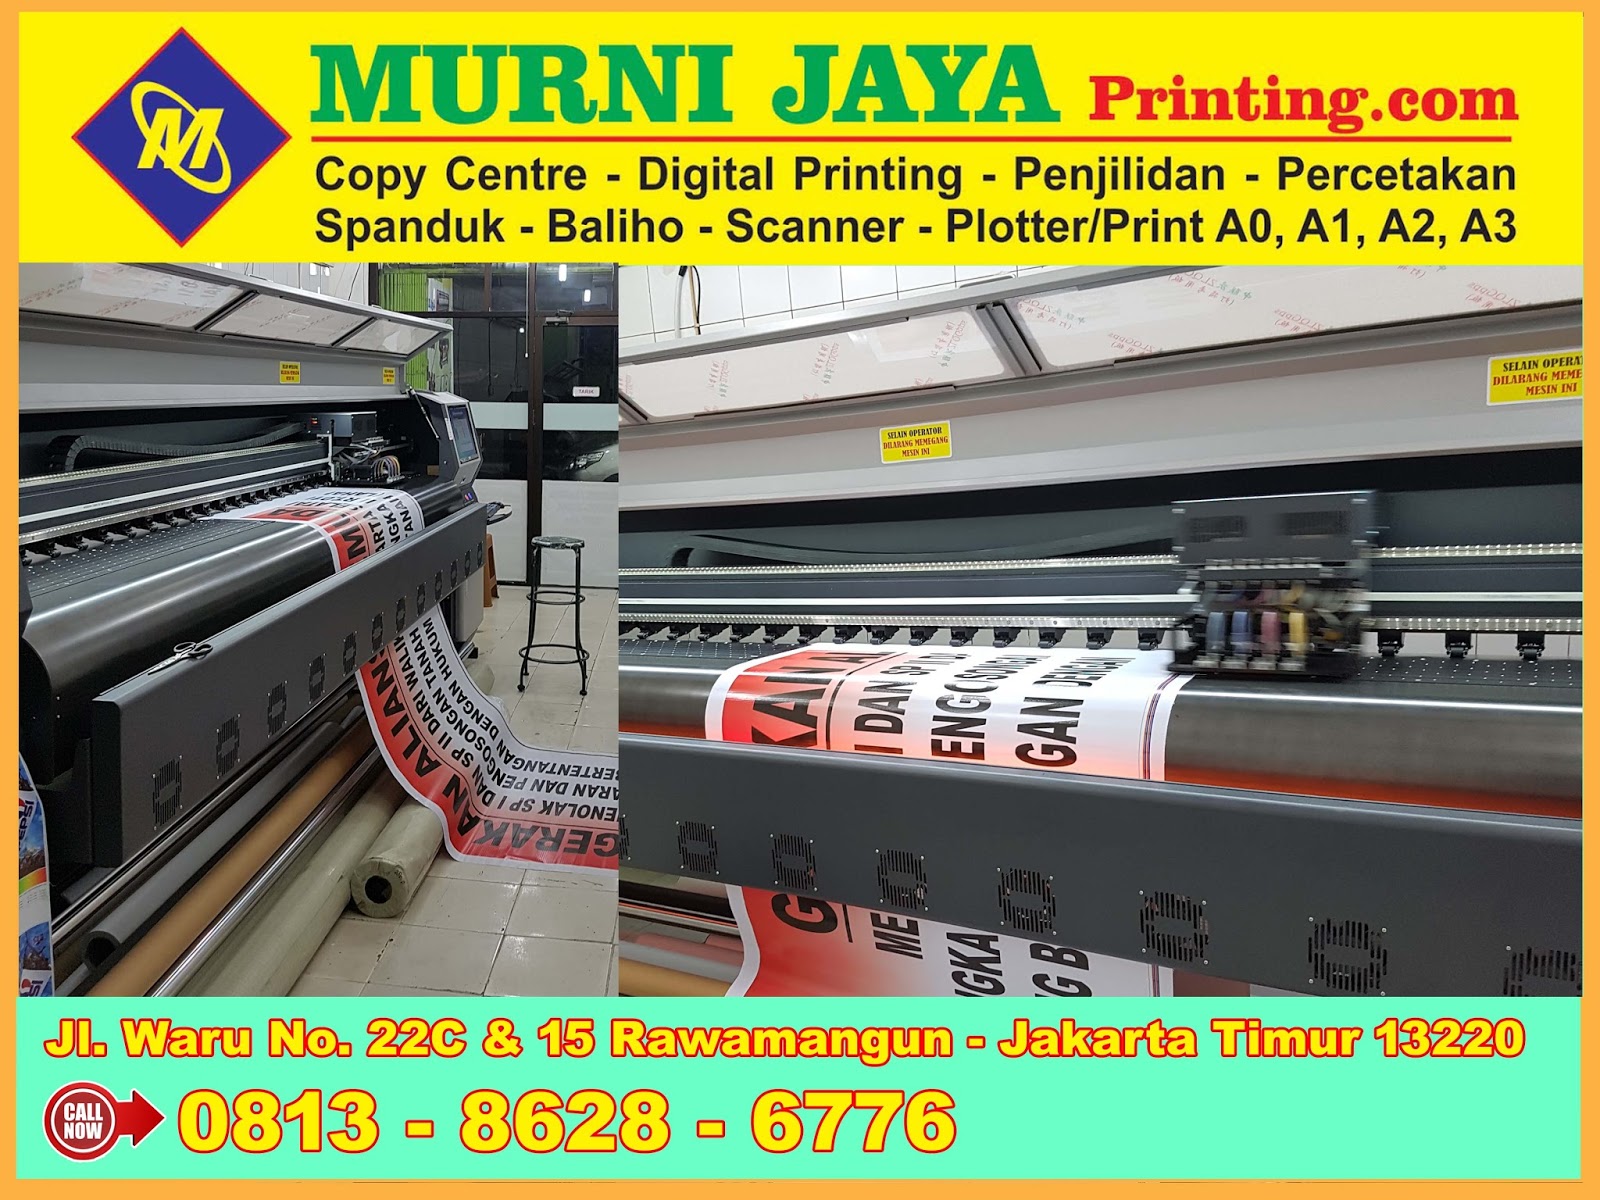 Murni Jaya Printing Jasa Fotocopy Penjilidan Cetak Spanduk Murah 24 Jam Di Jakarta Cetak Spanduk Murah Dan Berkualitas 24 Jam Di Jakarta